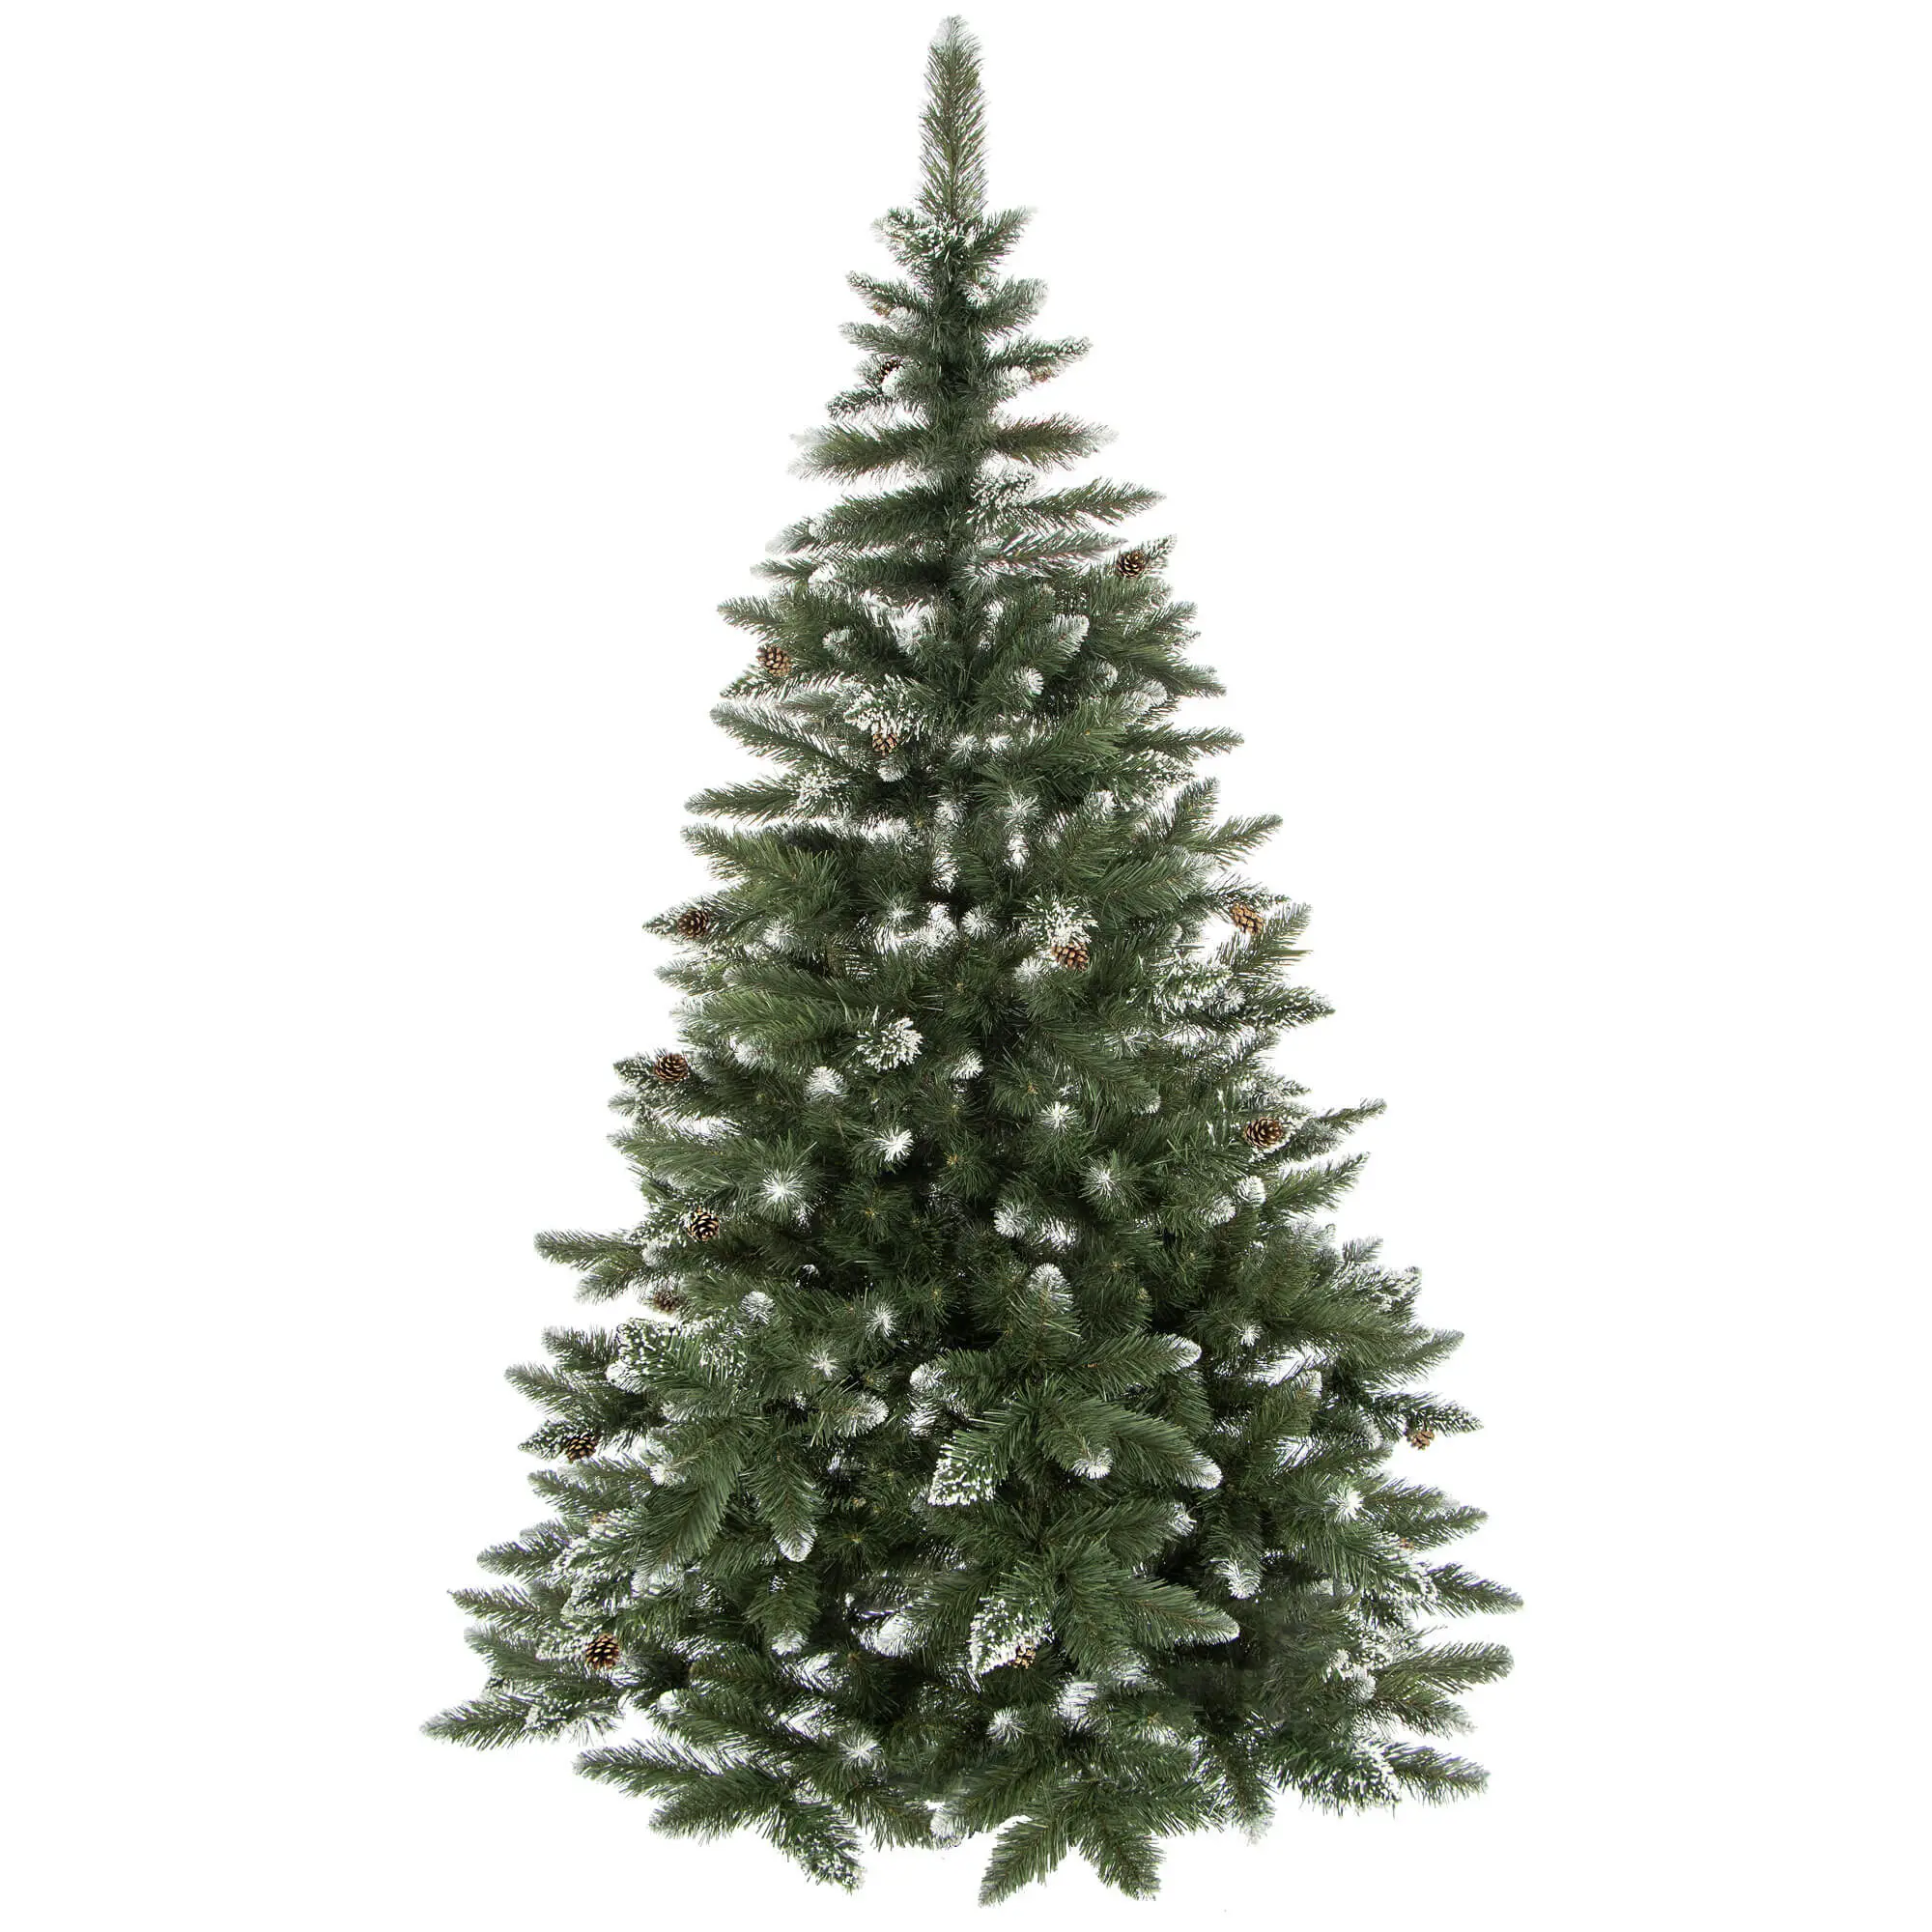 Premium-Weihnachtsbaum 150cm K眉nstlicher